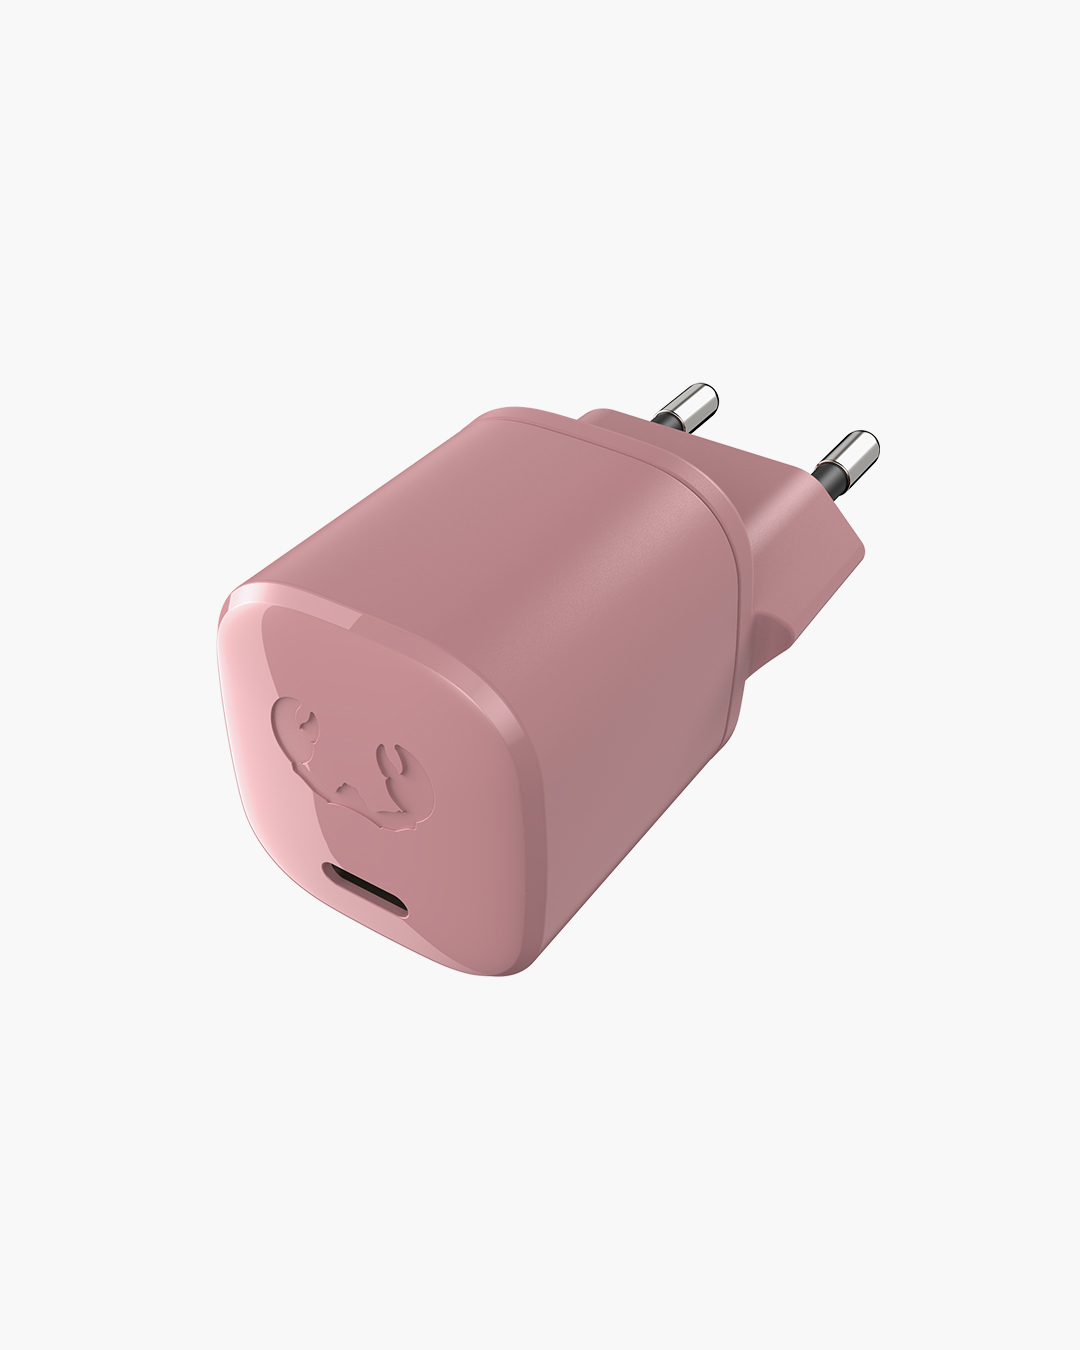 Fresh 'n Rebel - USB-C Mini Charger 18W - Dusty Pink